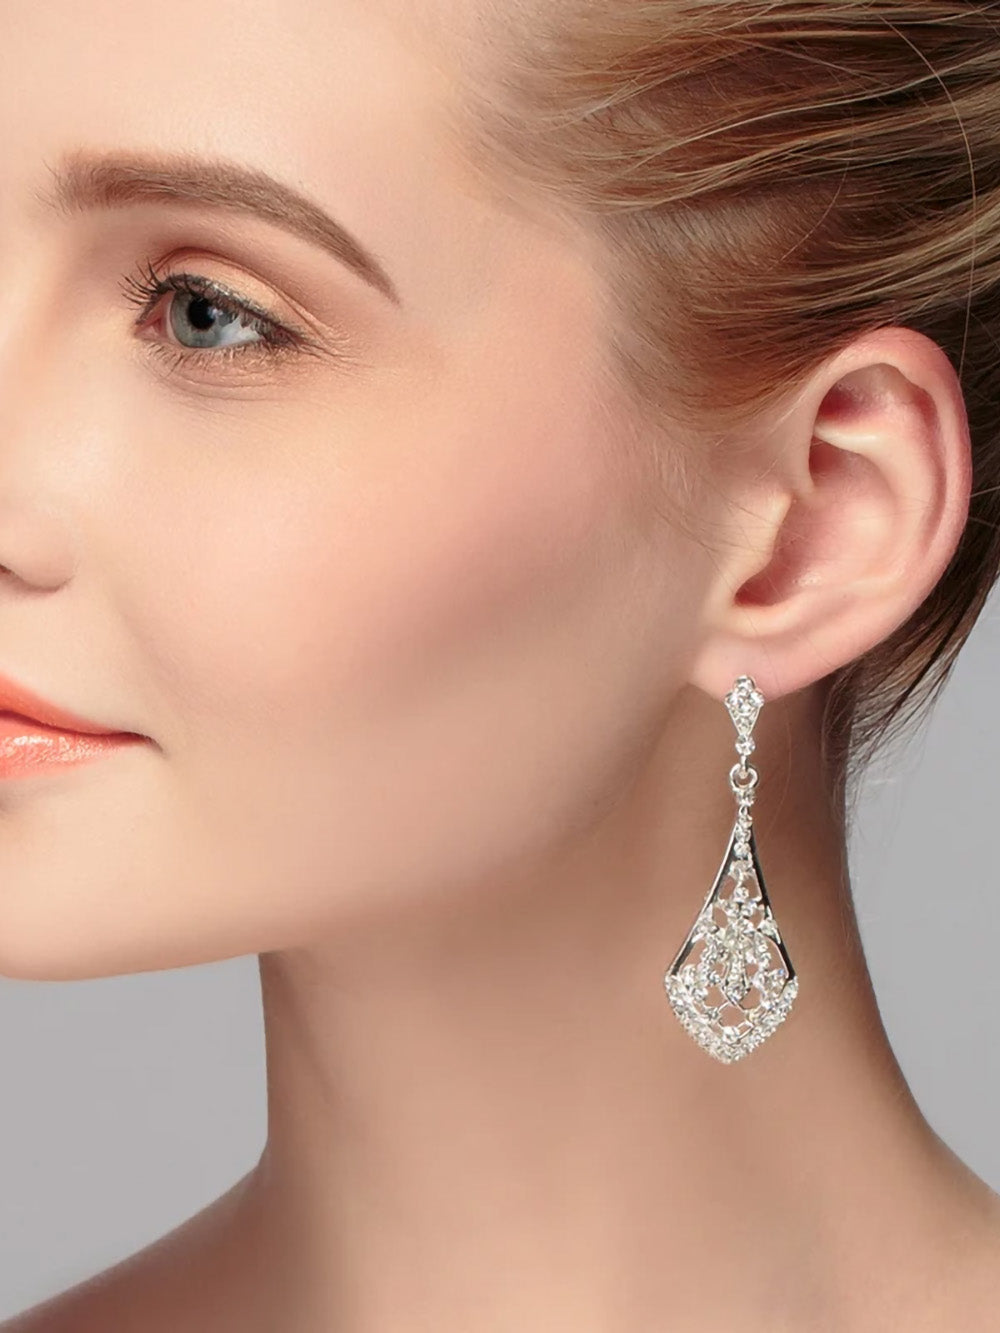 Crystal filigree drop earrings